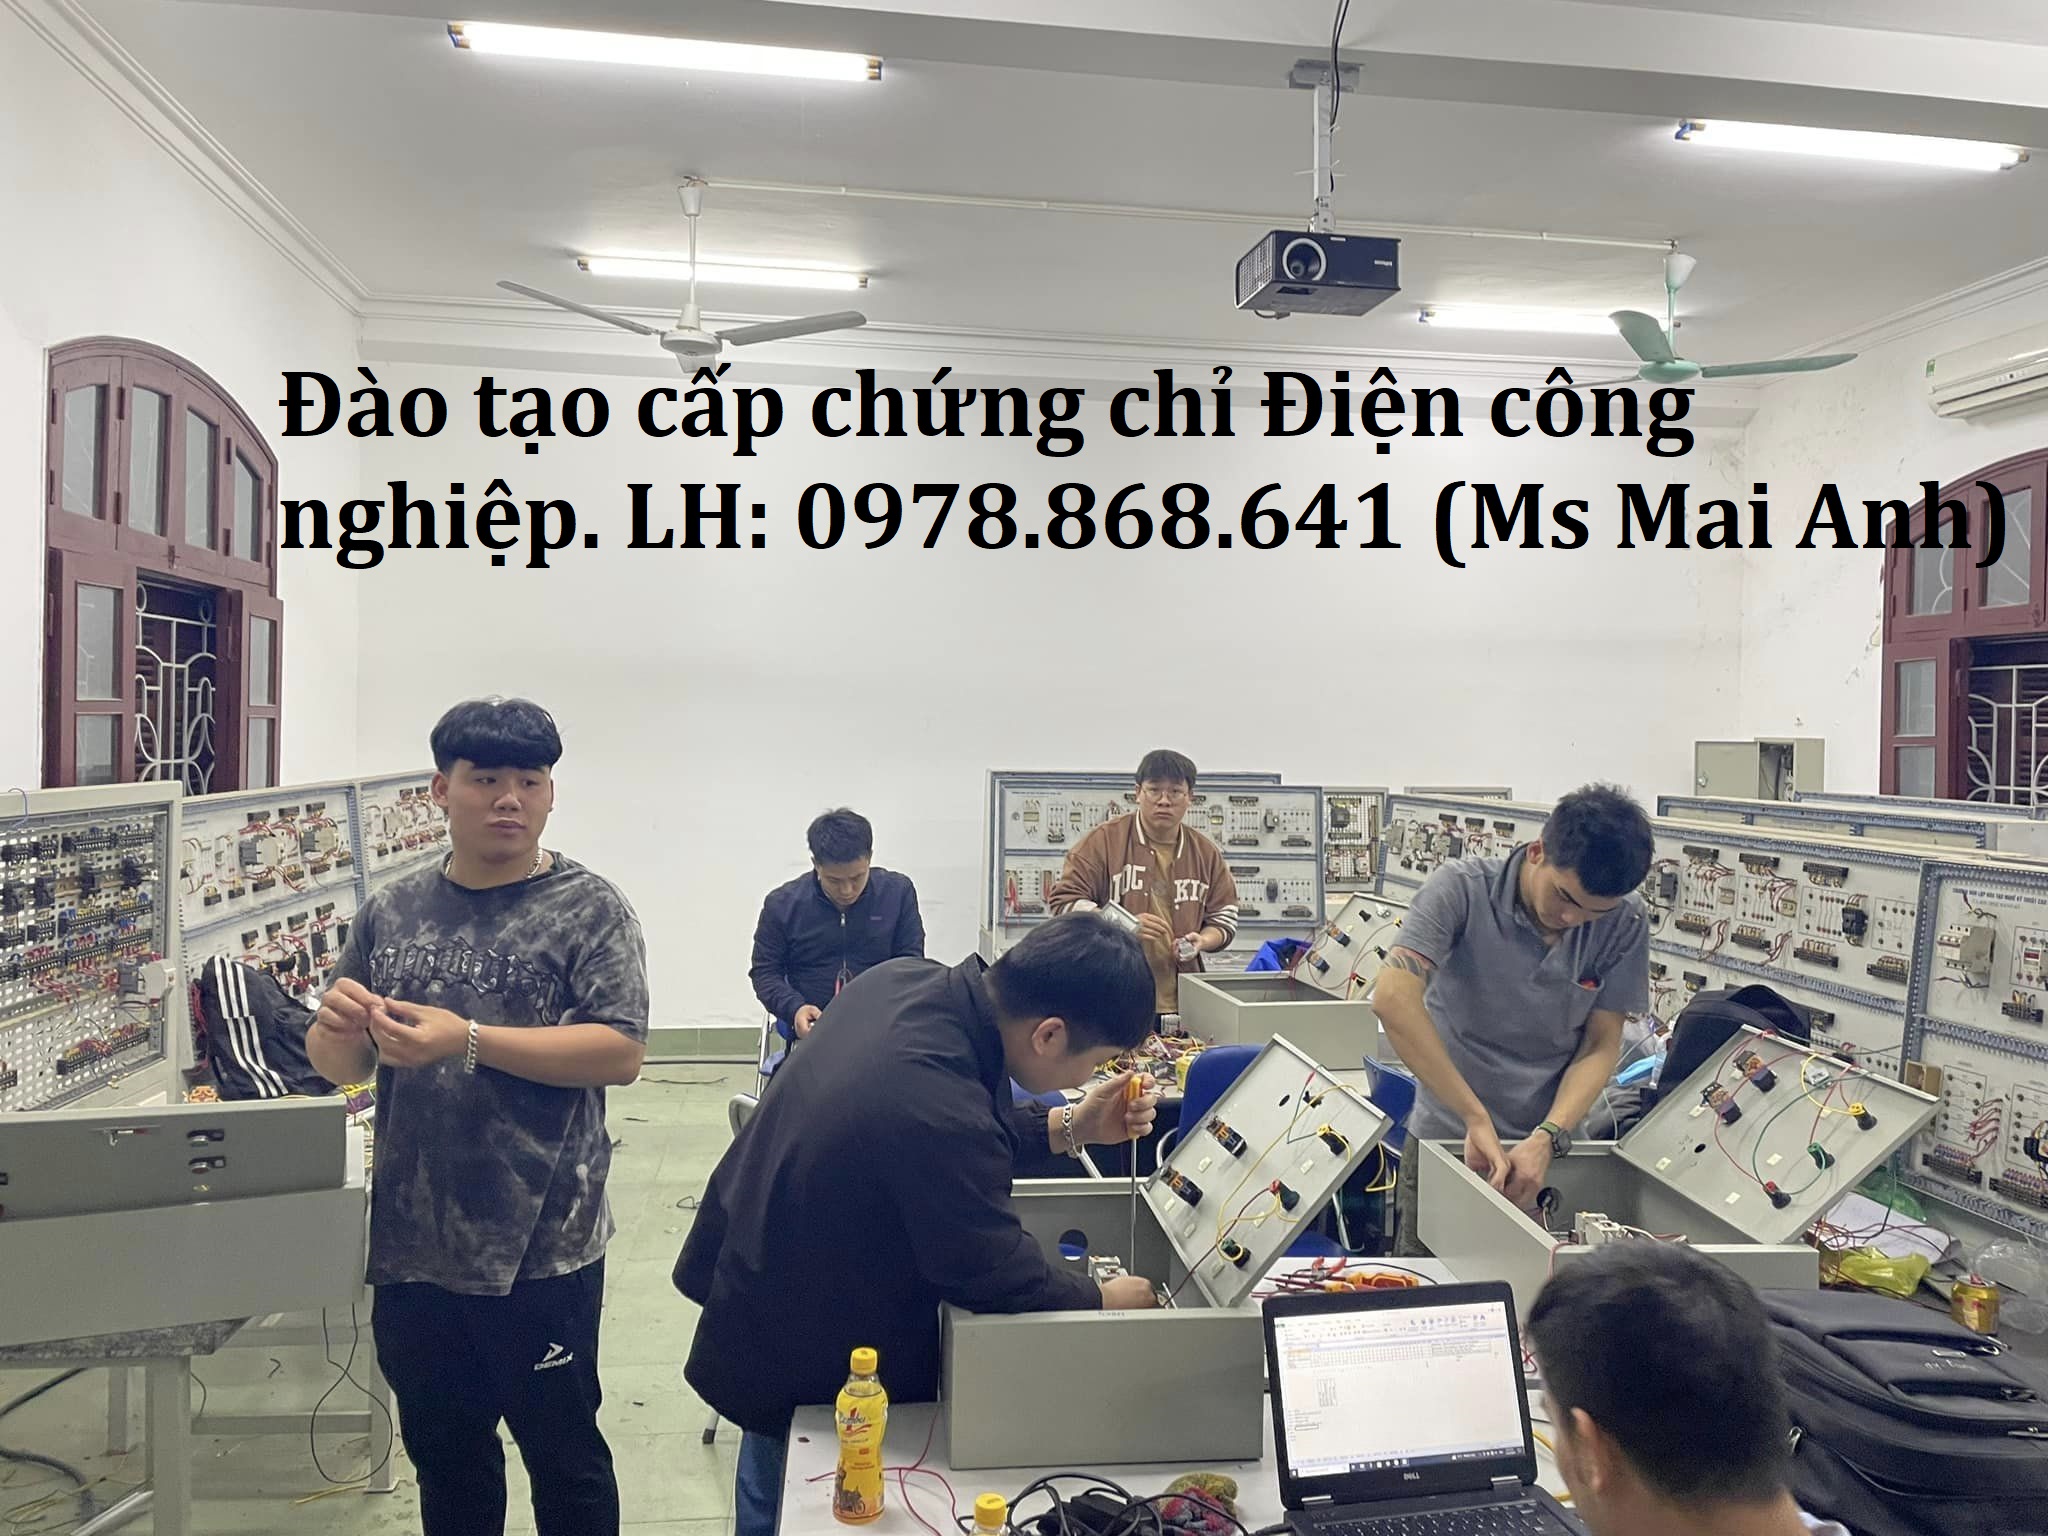 Đạo tạo khóa học sửa chữa điện lạnh - điện công nghiệp tại Hải Phòng